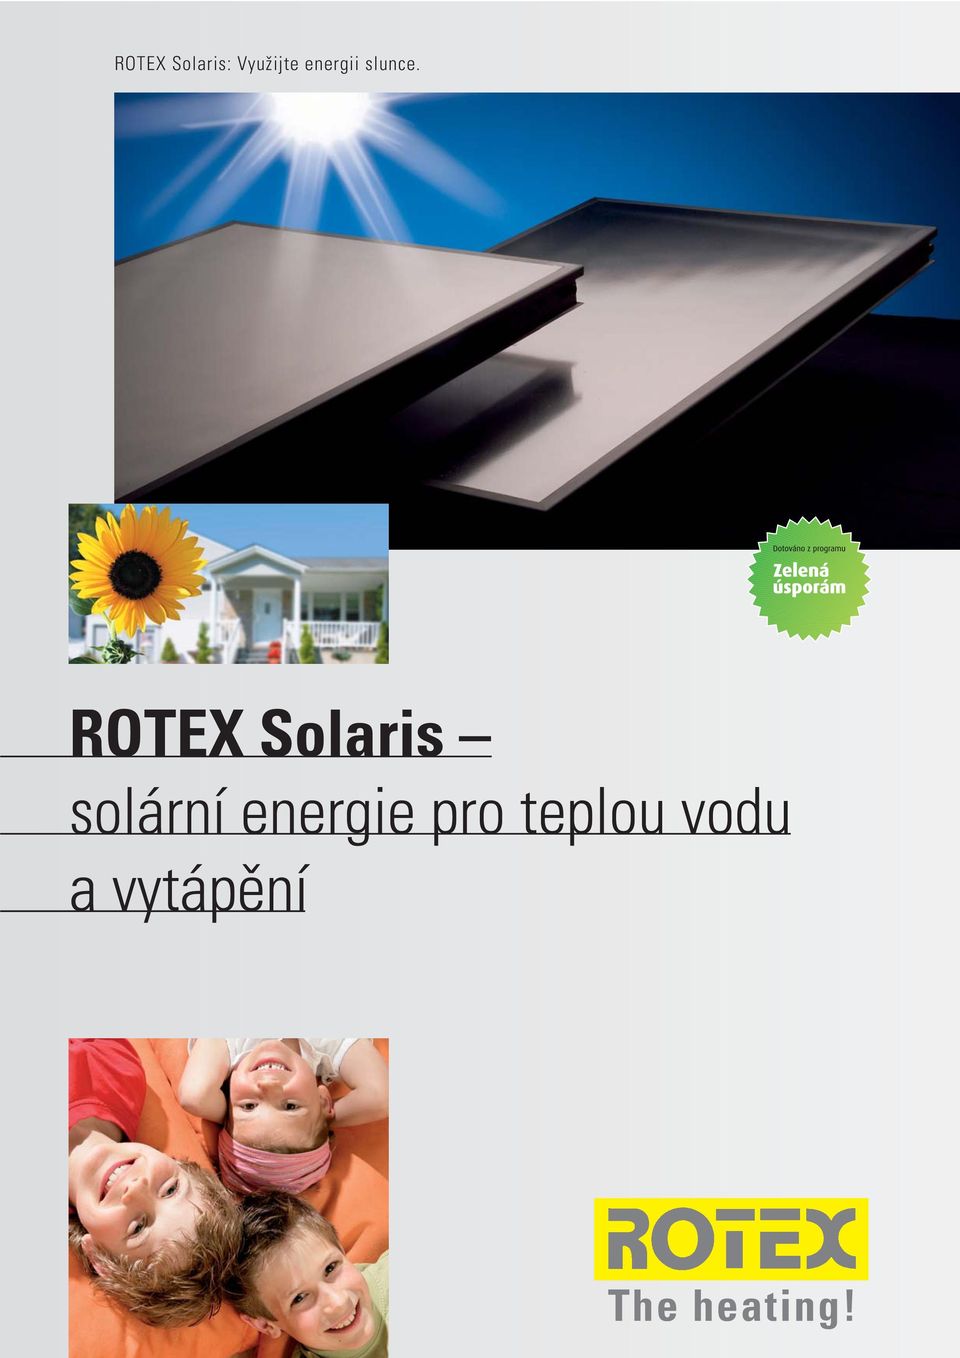 ROTEX Solaris solární